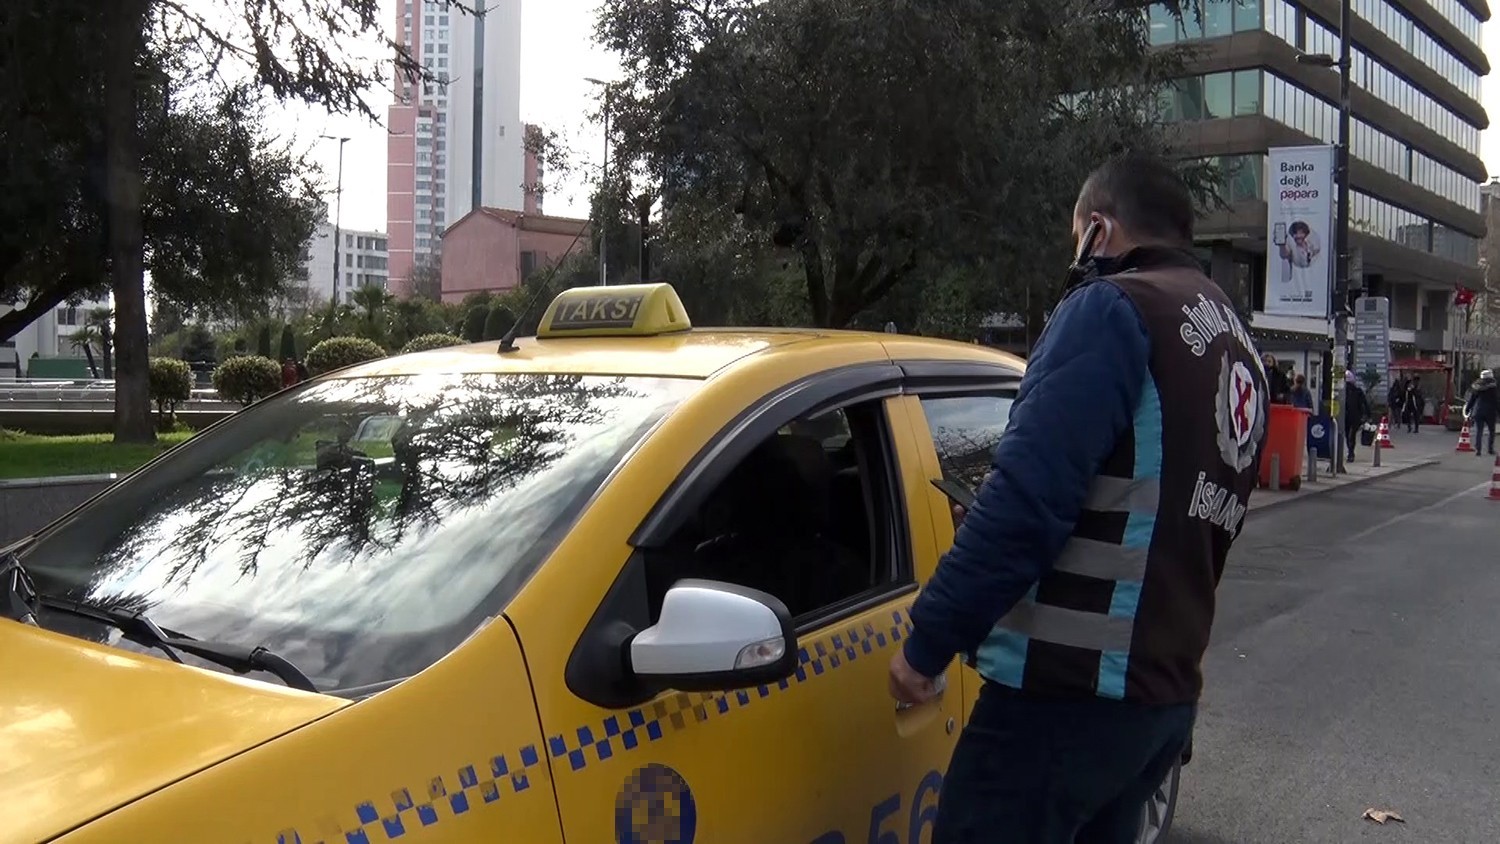 Bu da çakarlı taksi #istanbul